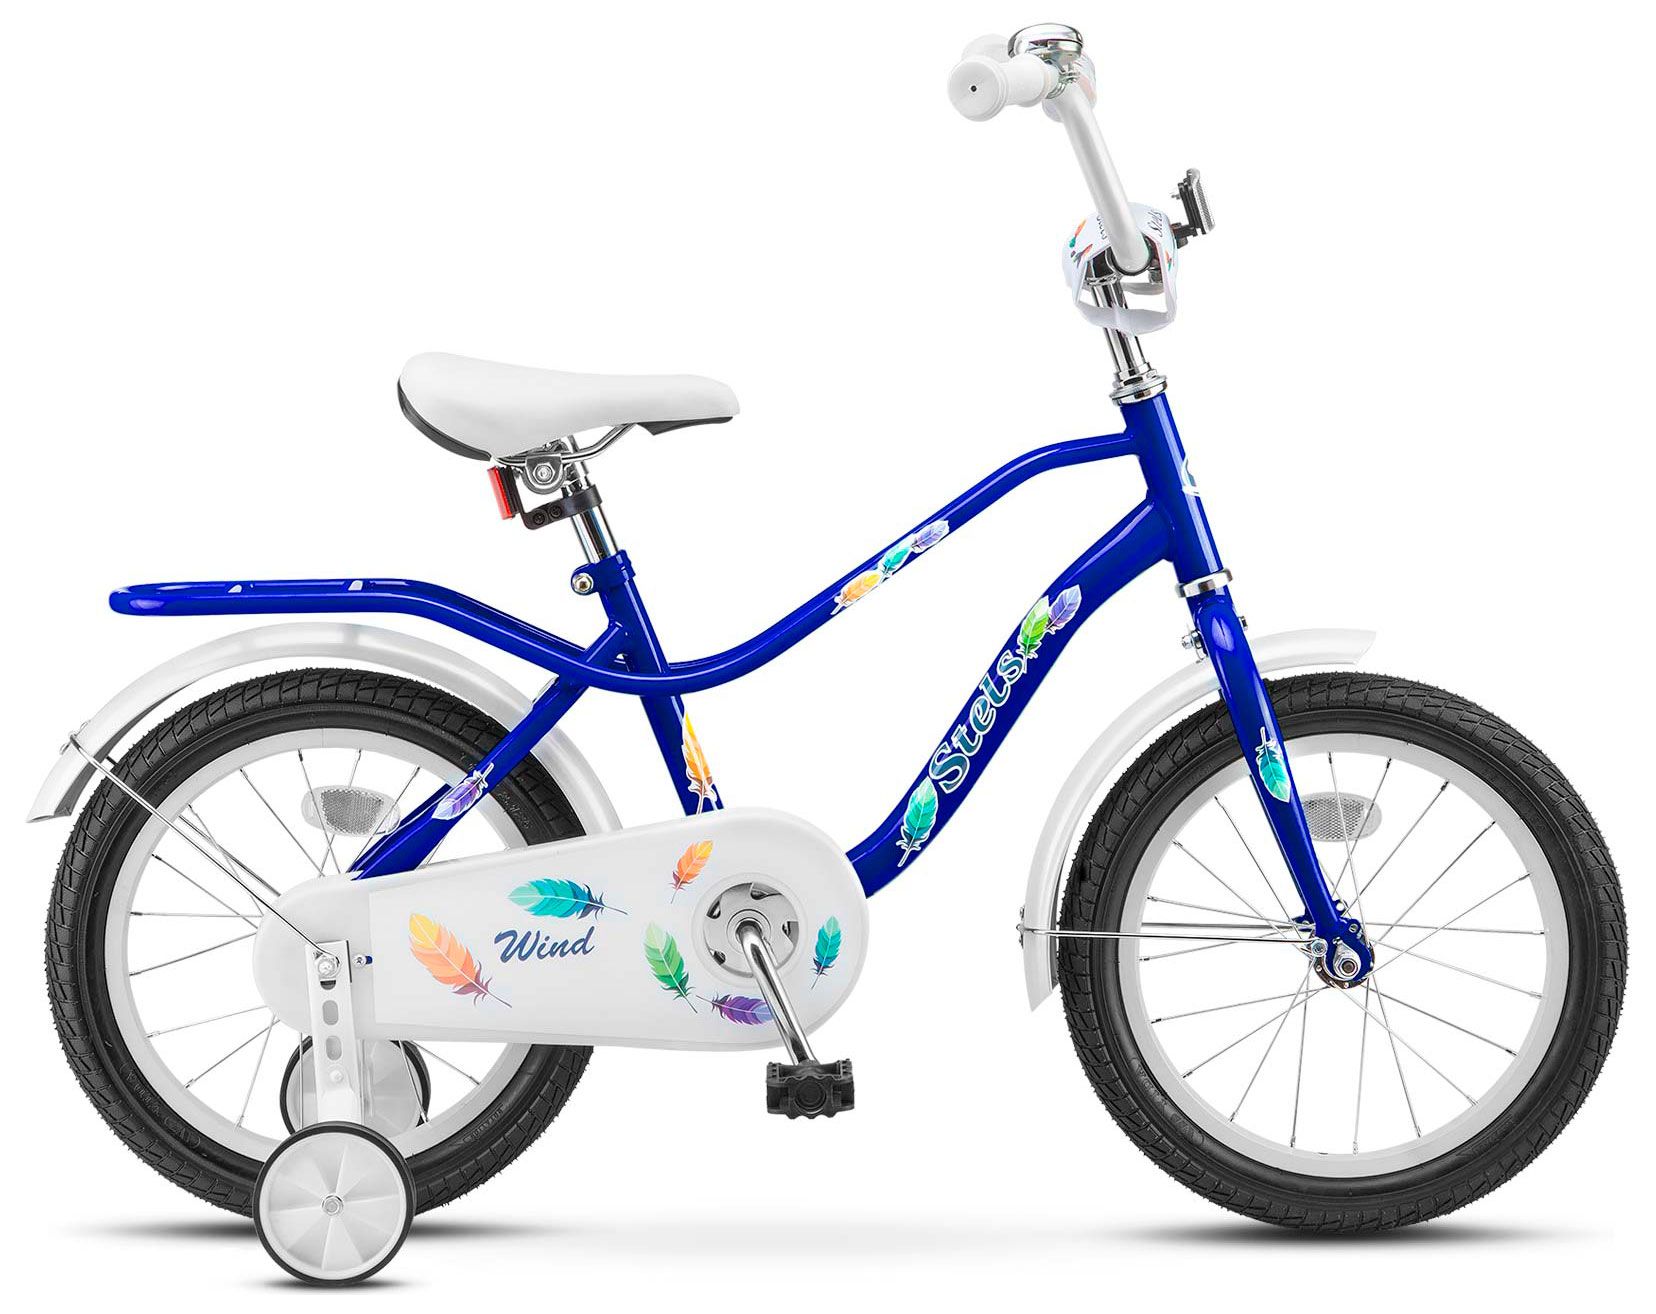  Велосипед трехколесный детский велосипед Stels Wind 14 (Z010) 2018